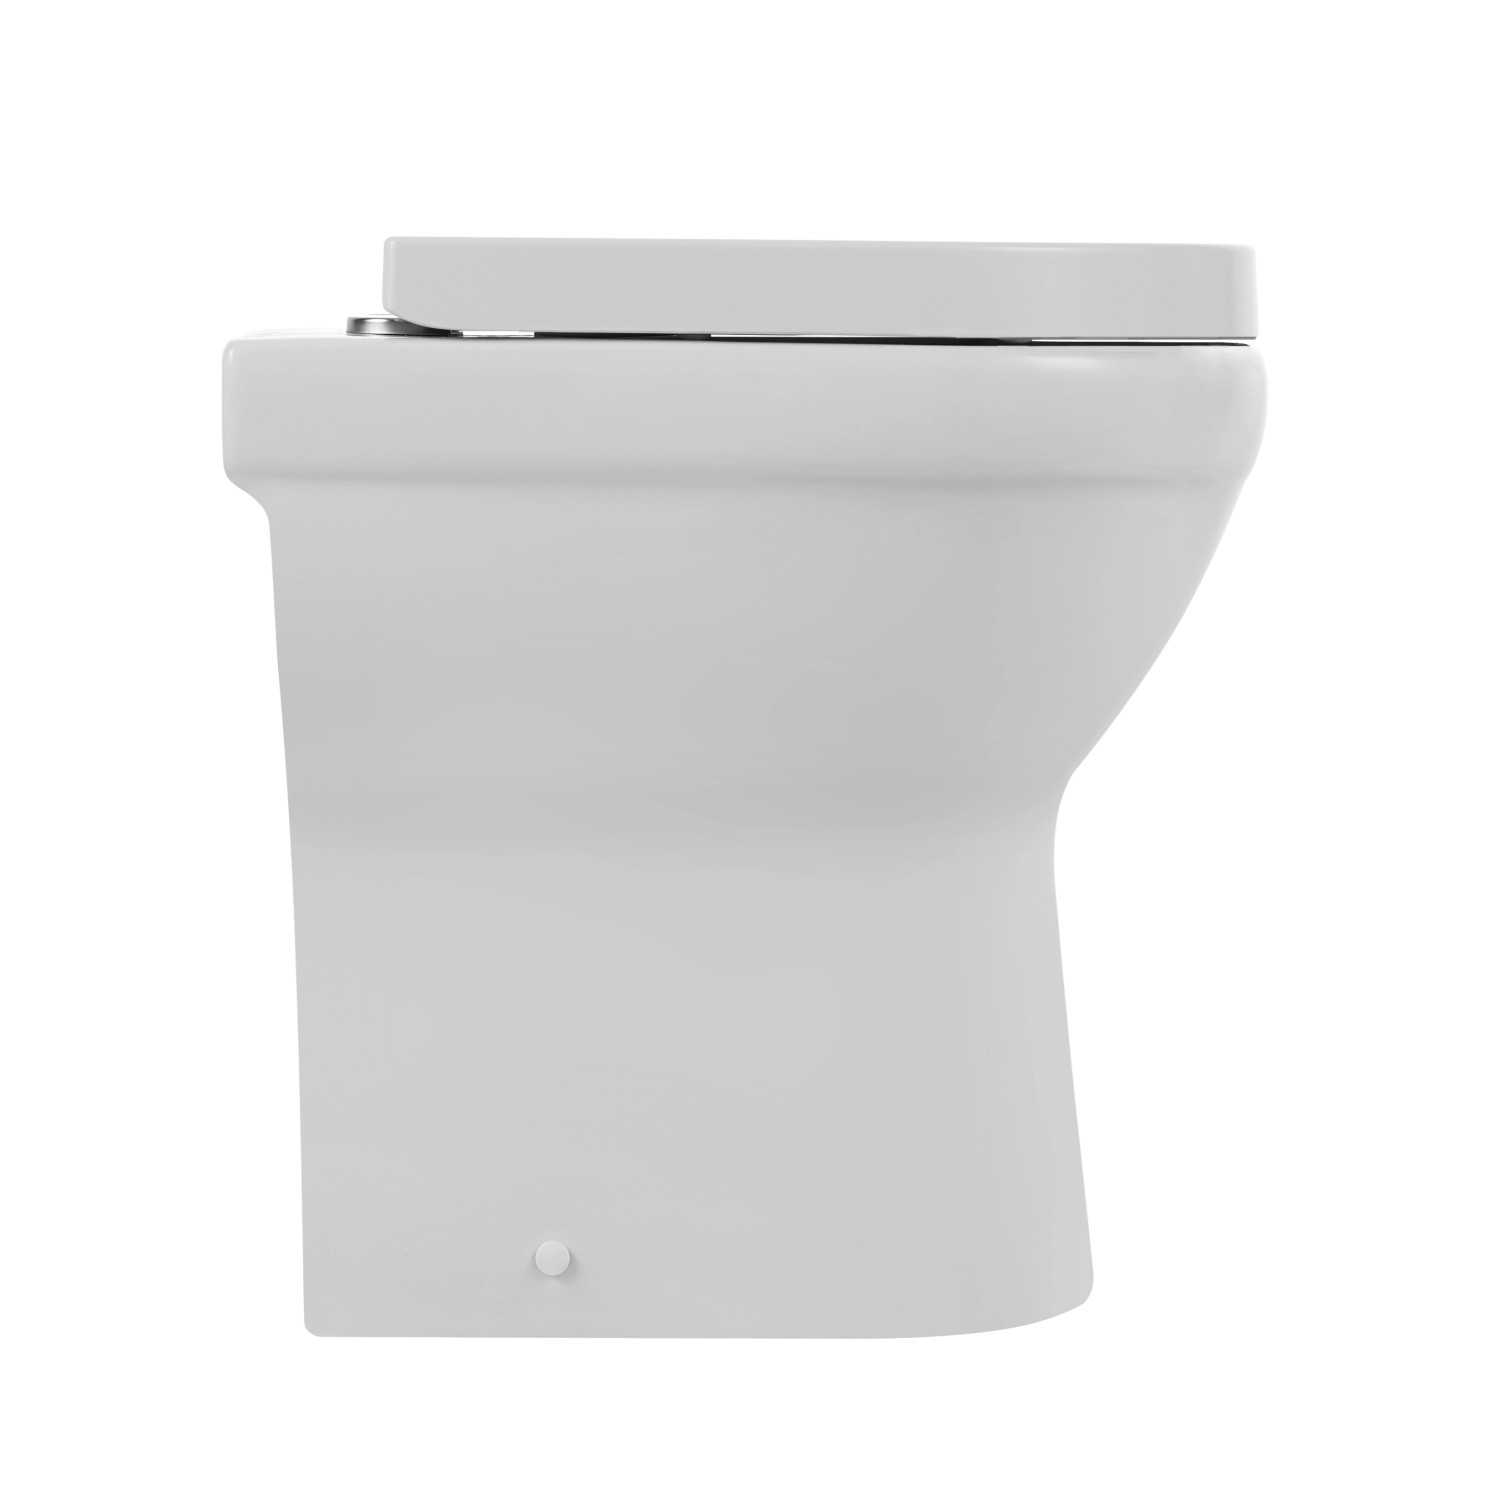 Verosan Tiefspül Stand-WC Cozy bei erhöht Sitz inkl. Weiß kaufen OBI Spülrandlos